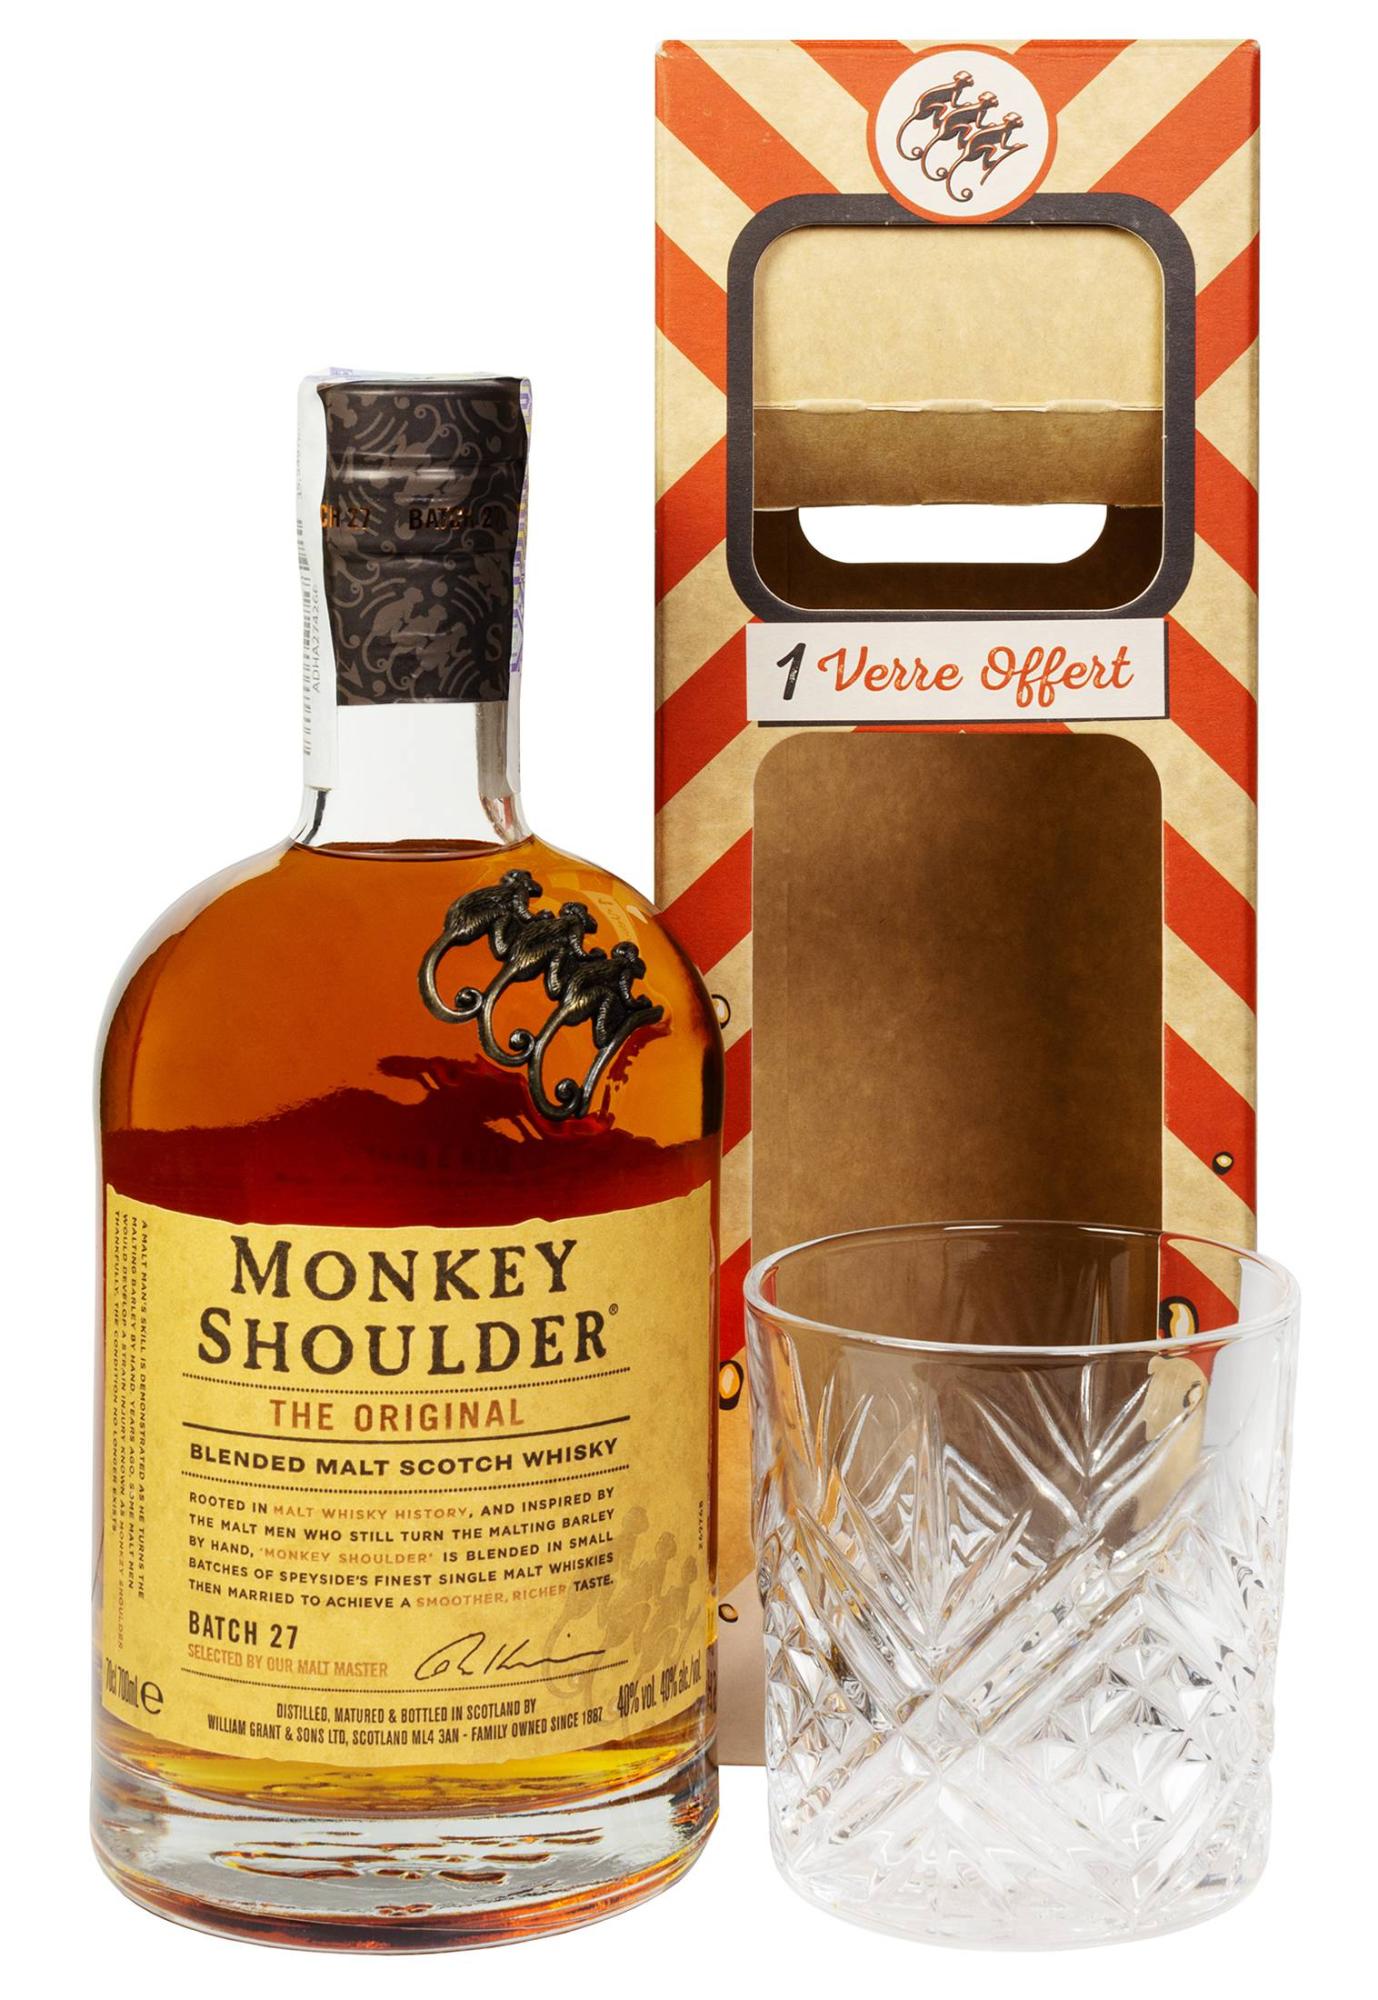 Манки шолдер 0.7. Виски манки шолдер 0.7. Виски Monkey Shoulder, 0.7 л. Виски МОНКЕЙ. Виски Monkey Shoulder 0,7 л в подарочной упаковке + стакан.